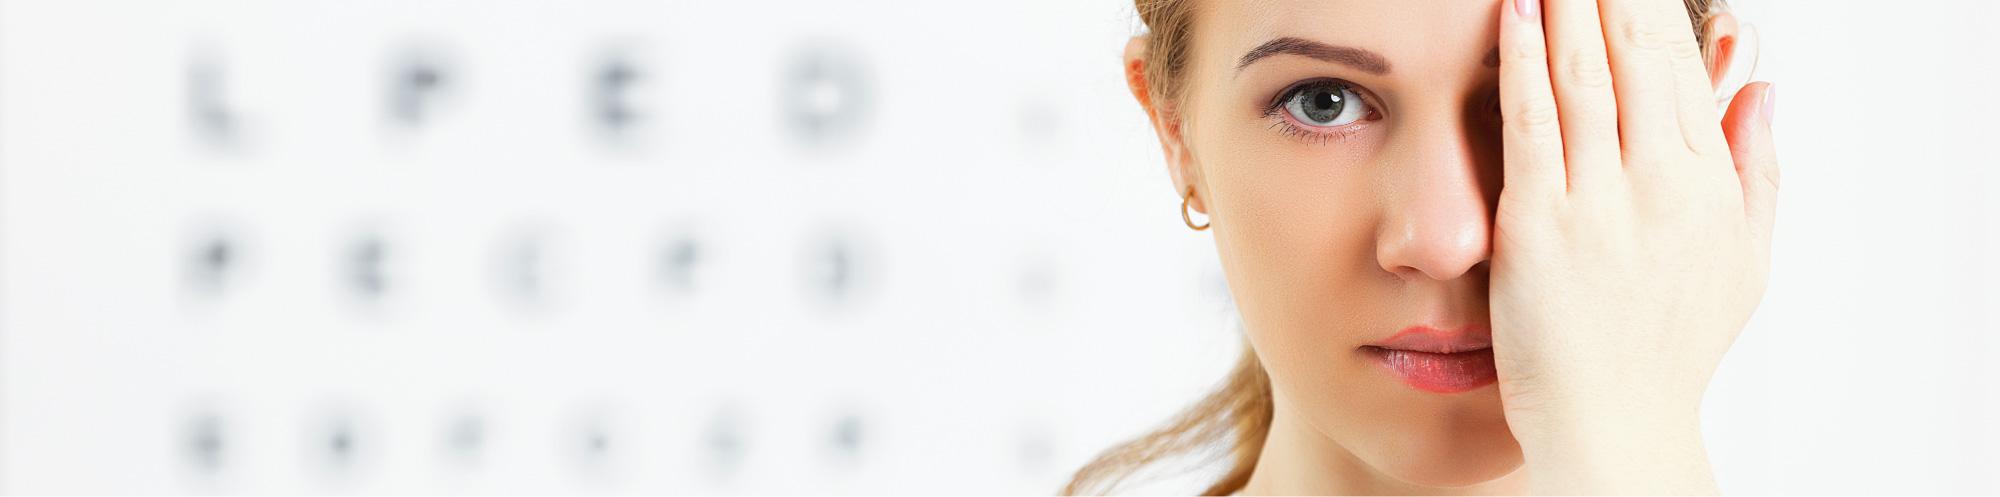 Perimetrie  - Augenarztpraxis Buchen